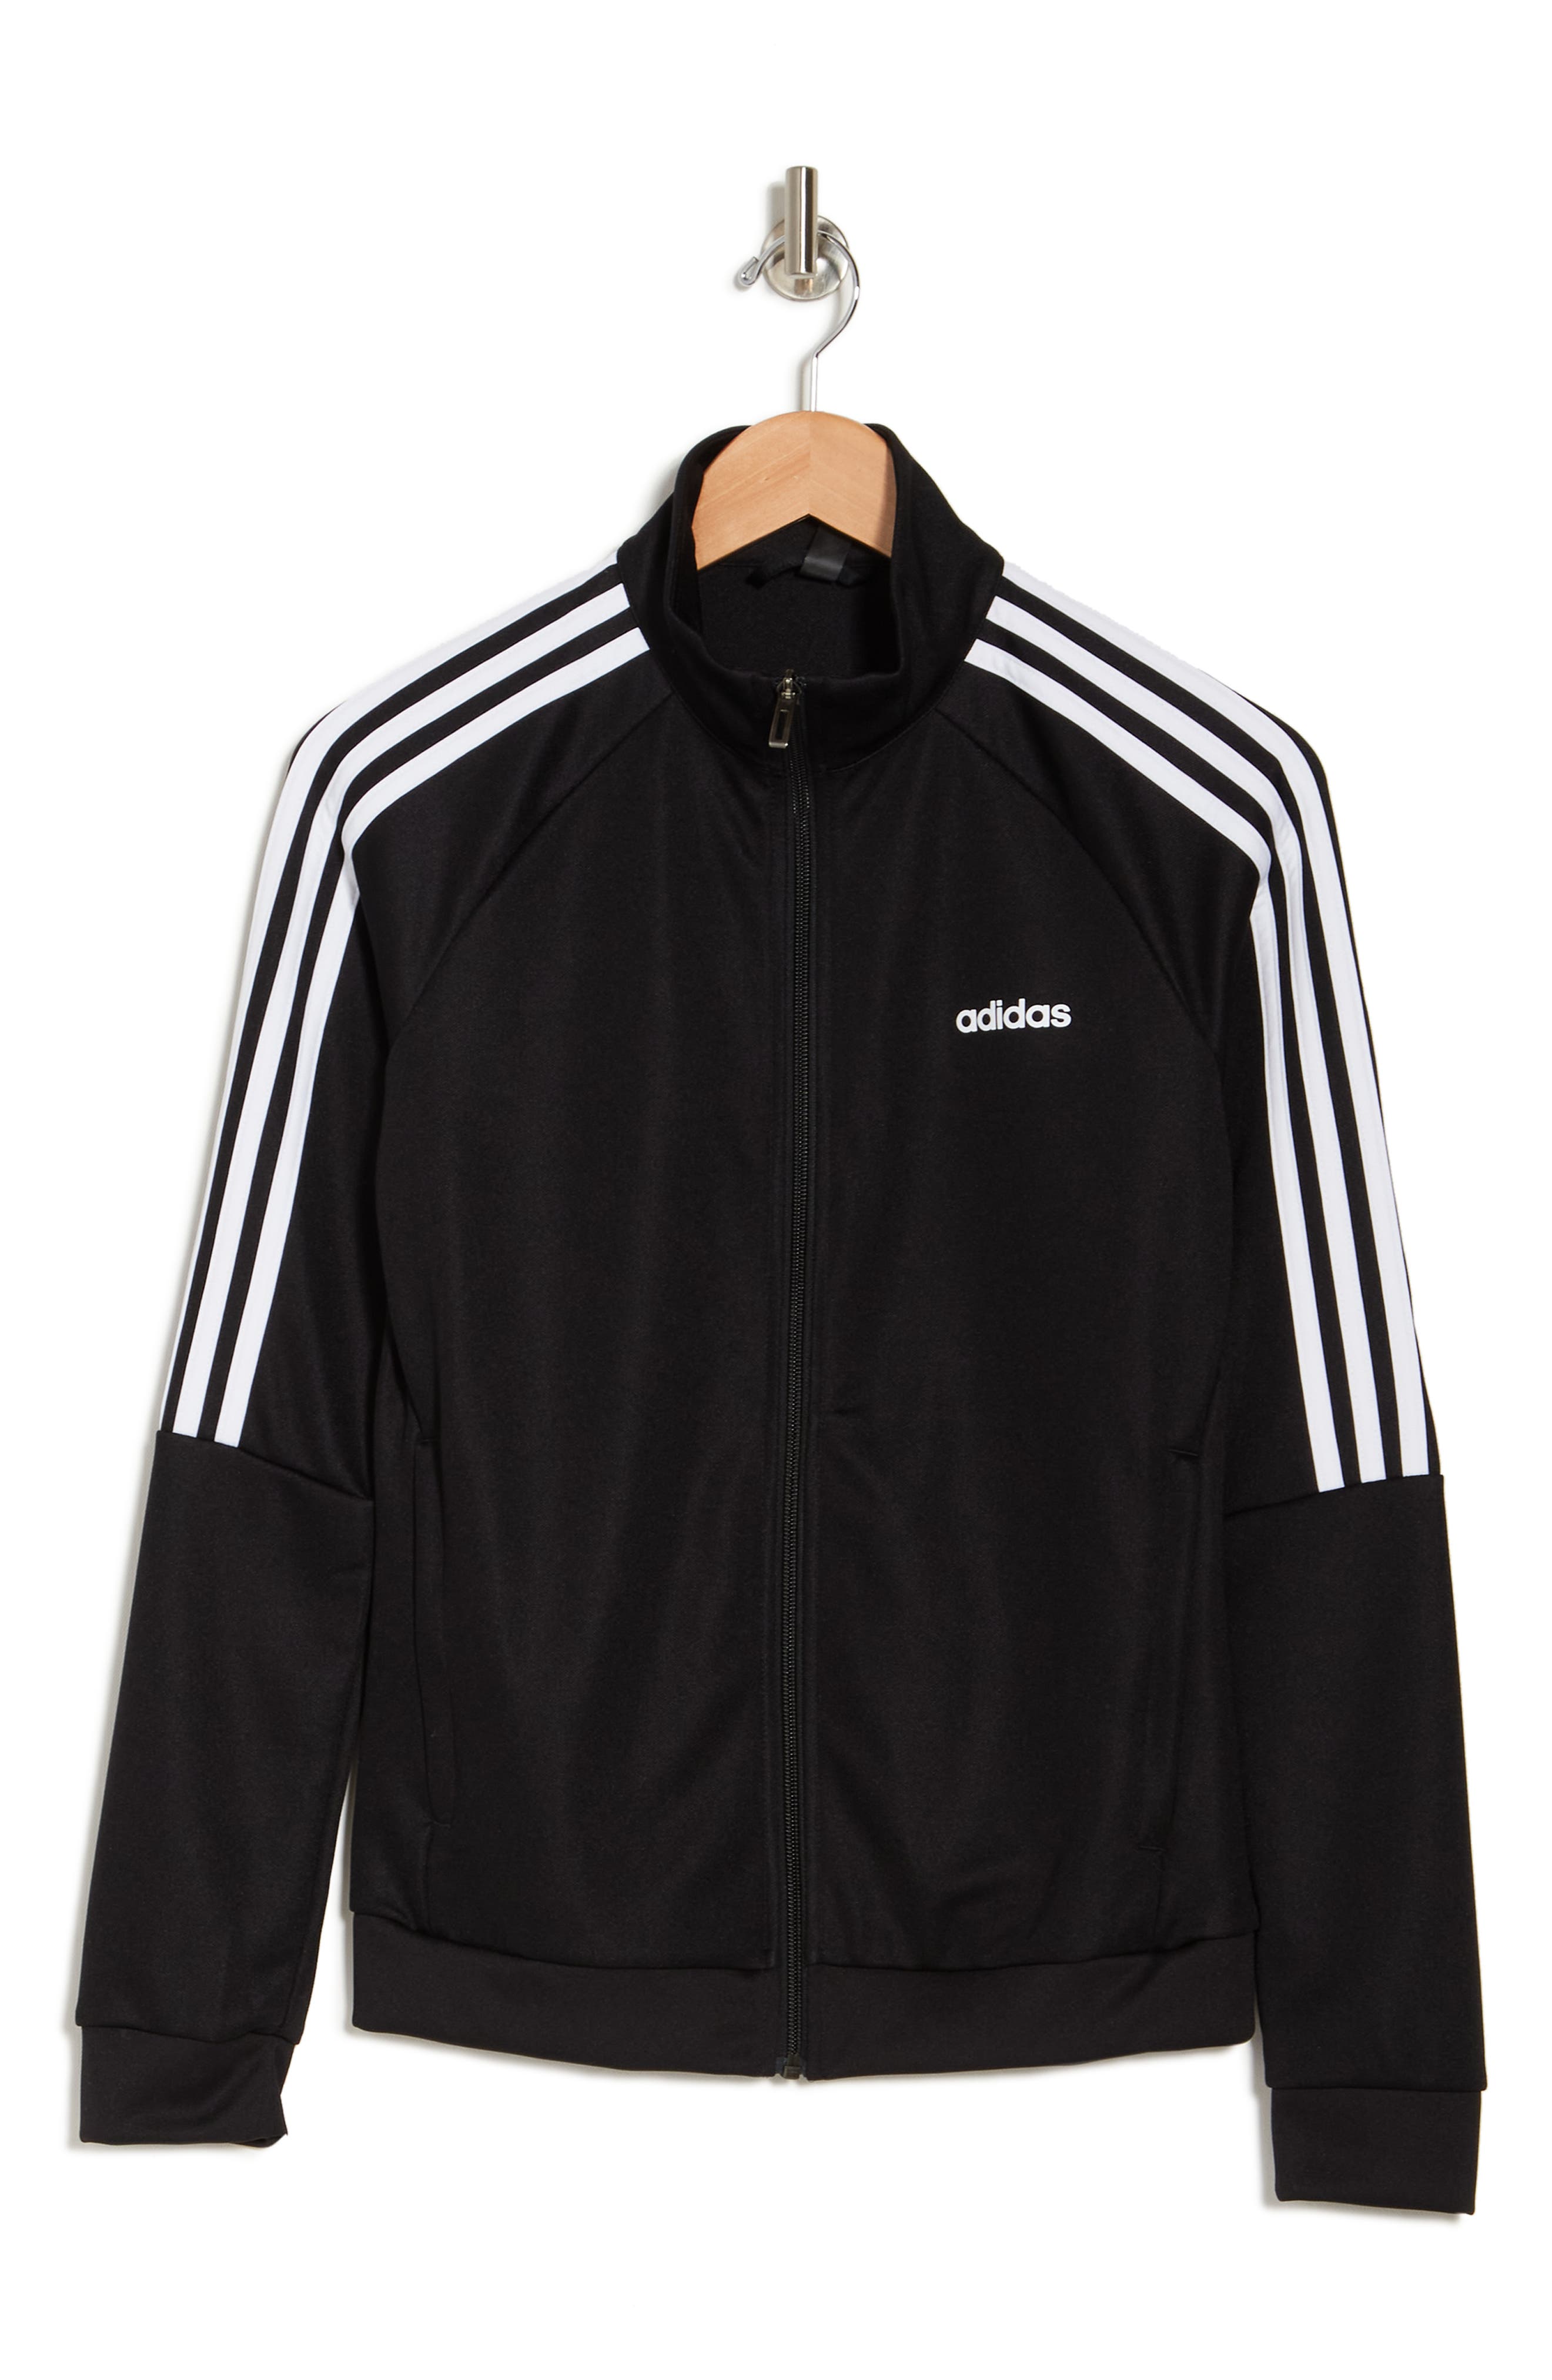 Adidas Originals Sere10 Track Jacket In Black/whit